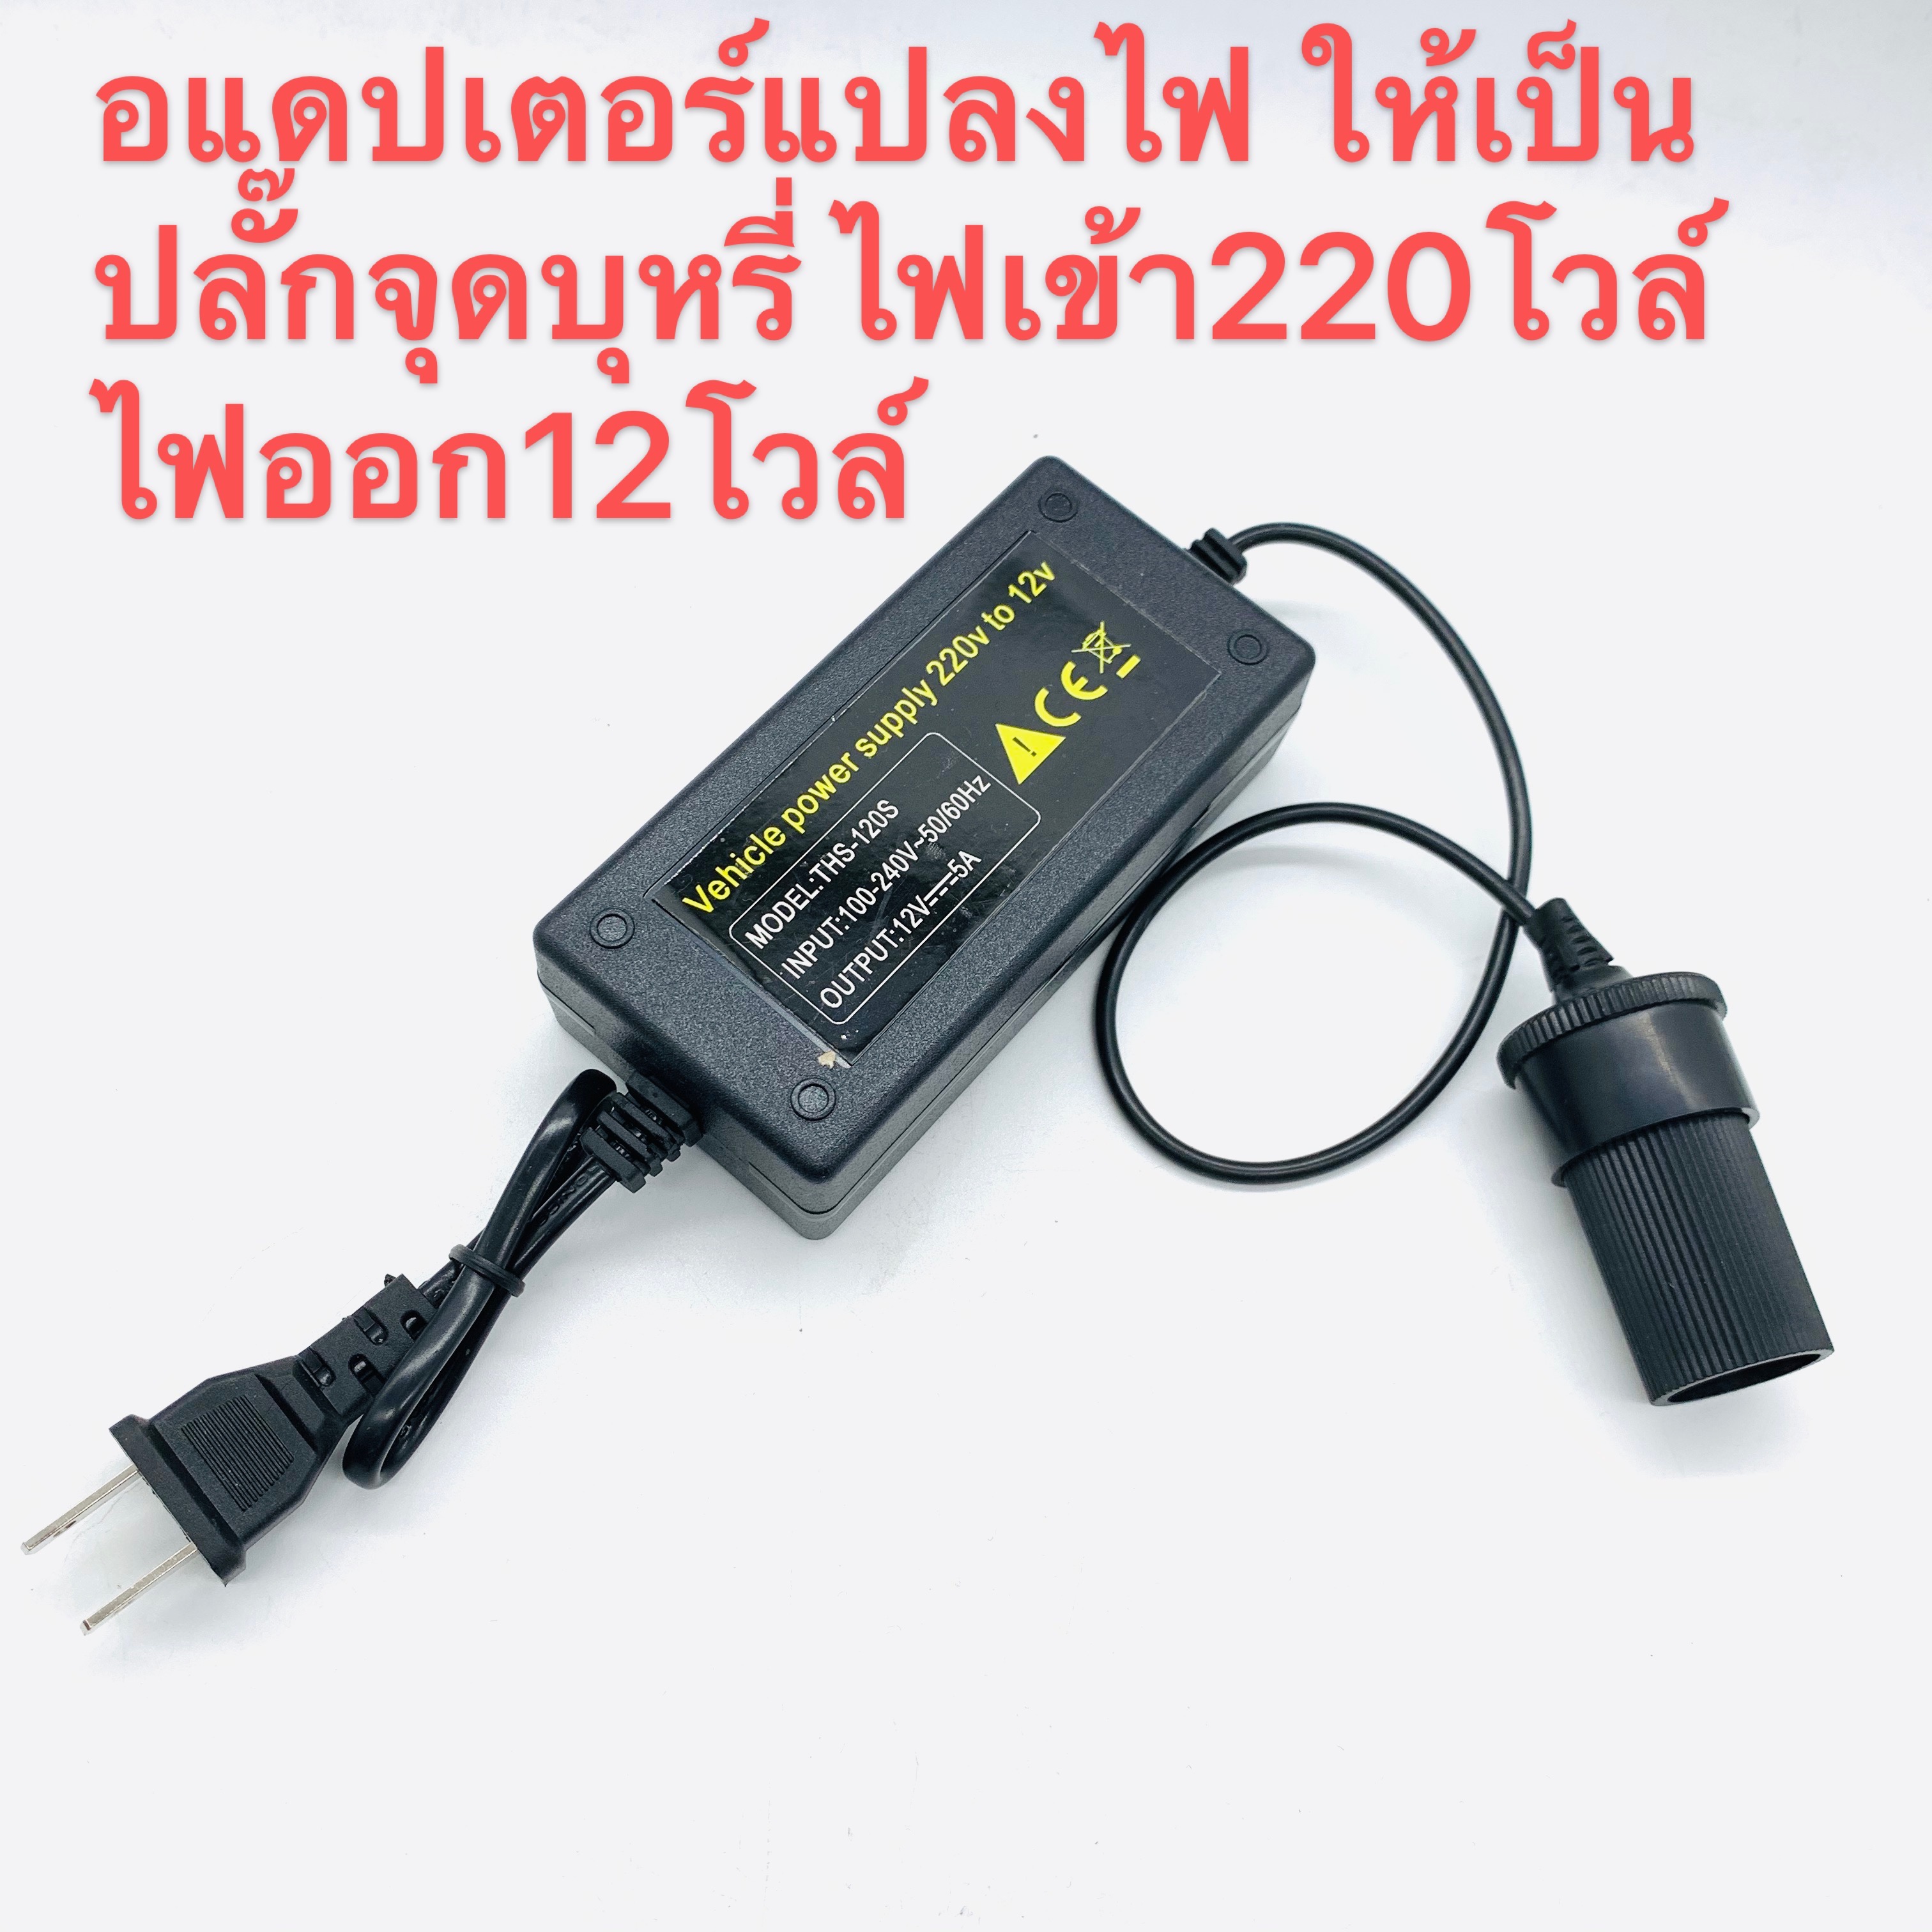 แปลงไฟบ้าน 220V เป็นไฟรถยนย์ 12V DC 220V to 12V 5A Home Power Adapter Car Adapter AC Plug (Black)